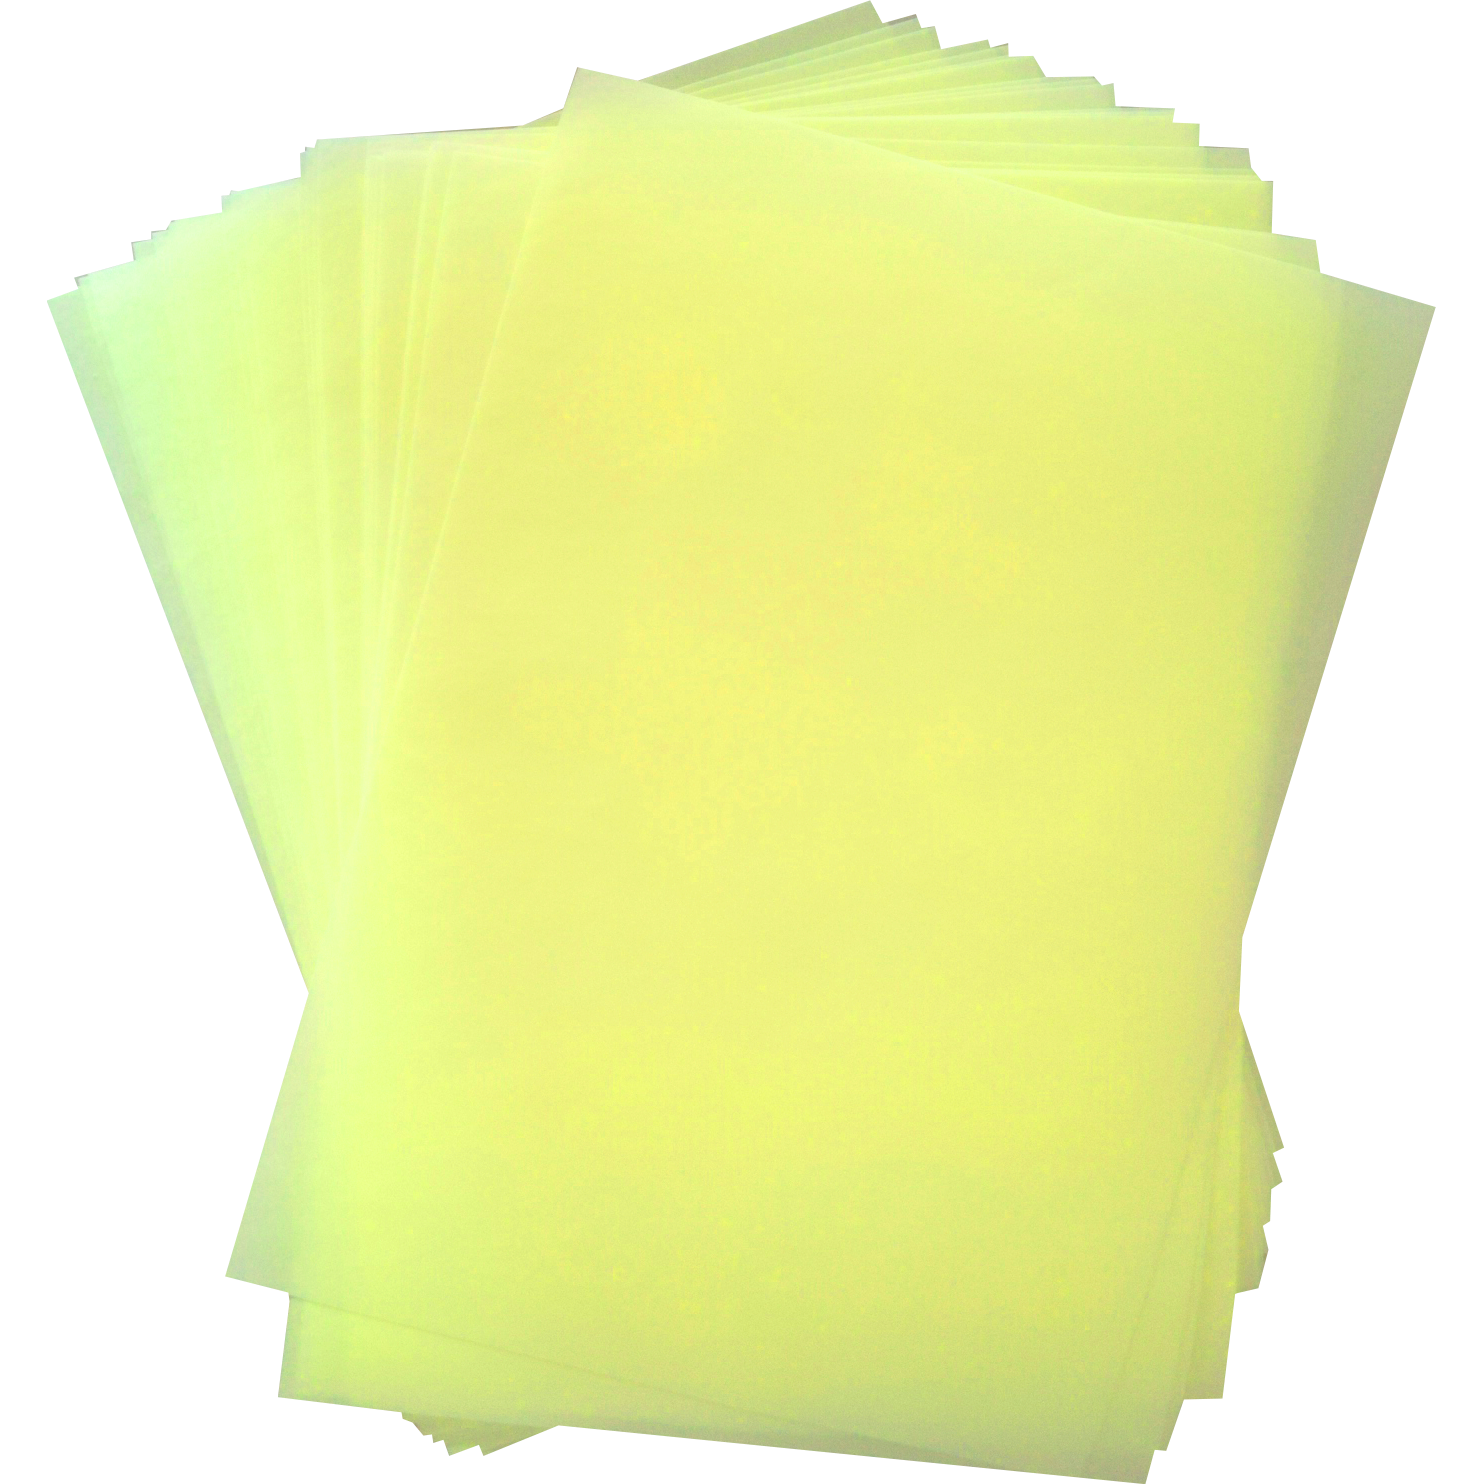 Jedlý papír žlutý a4 25ks - Apolo77